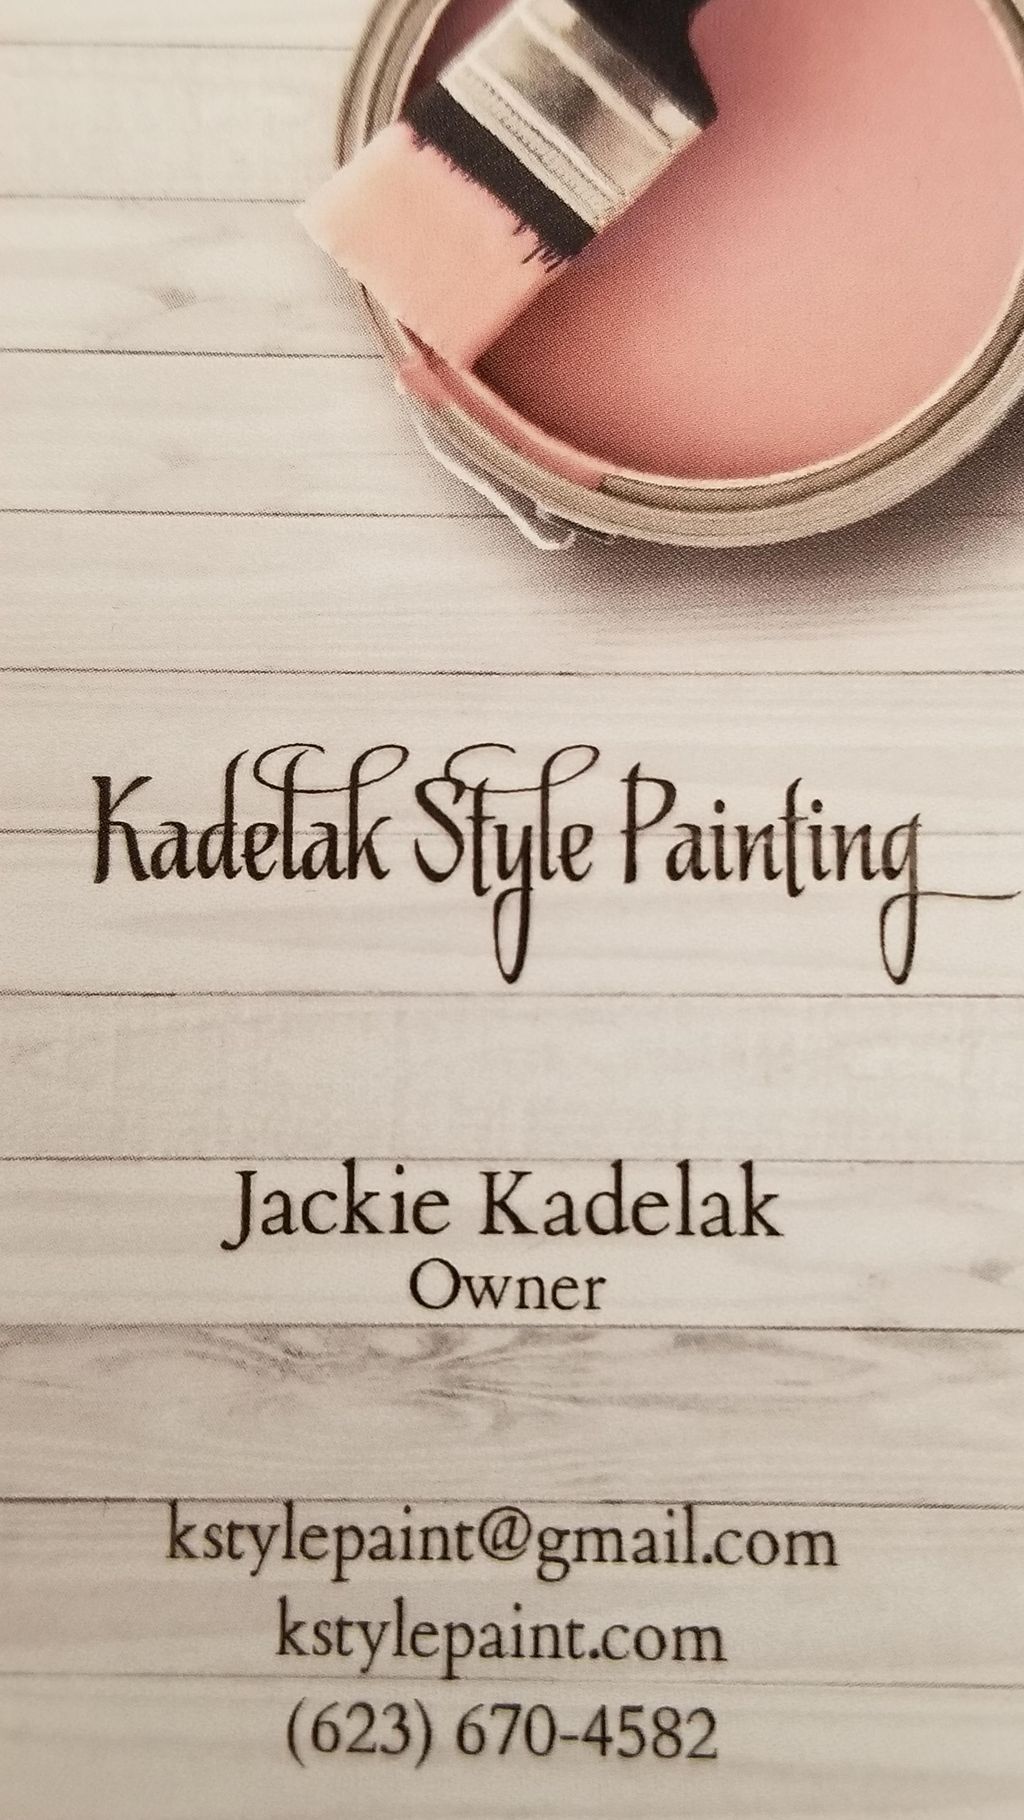 Kadelak Style Painting